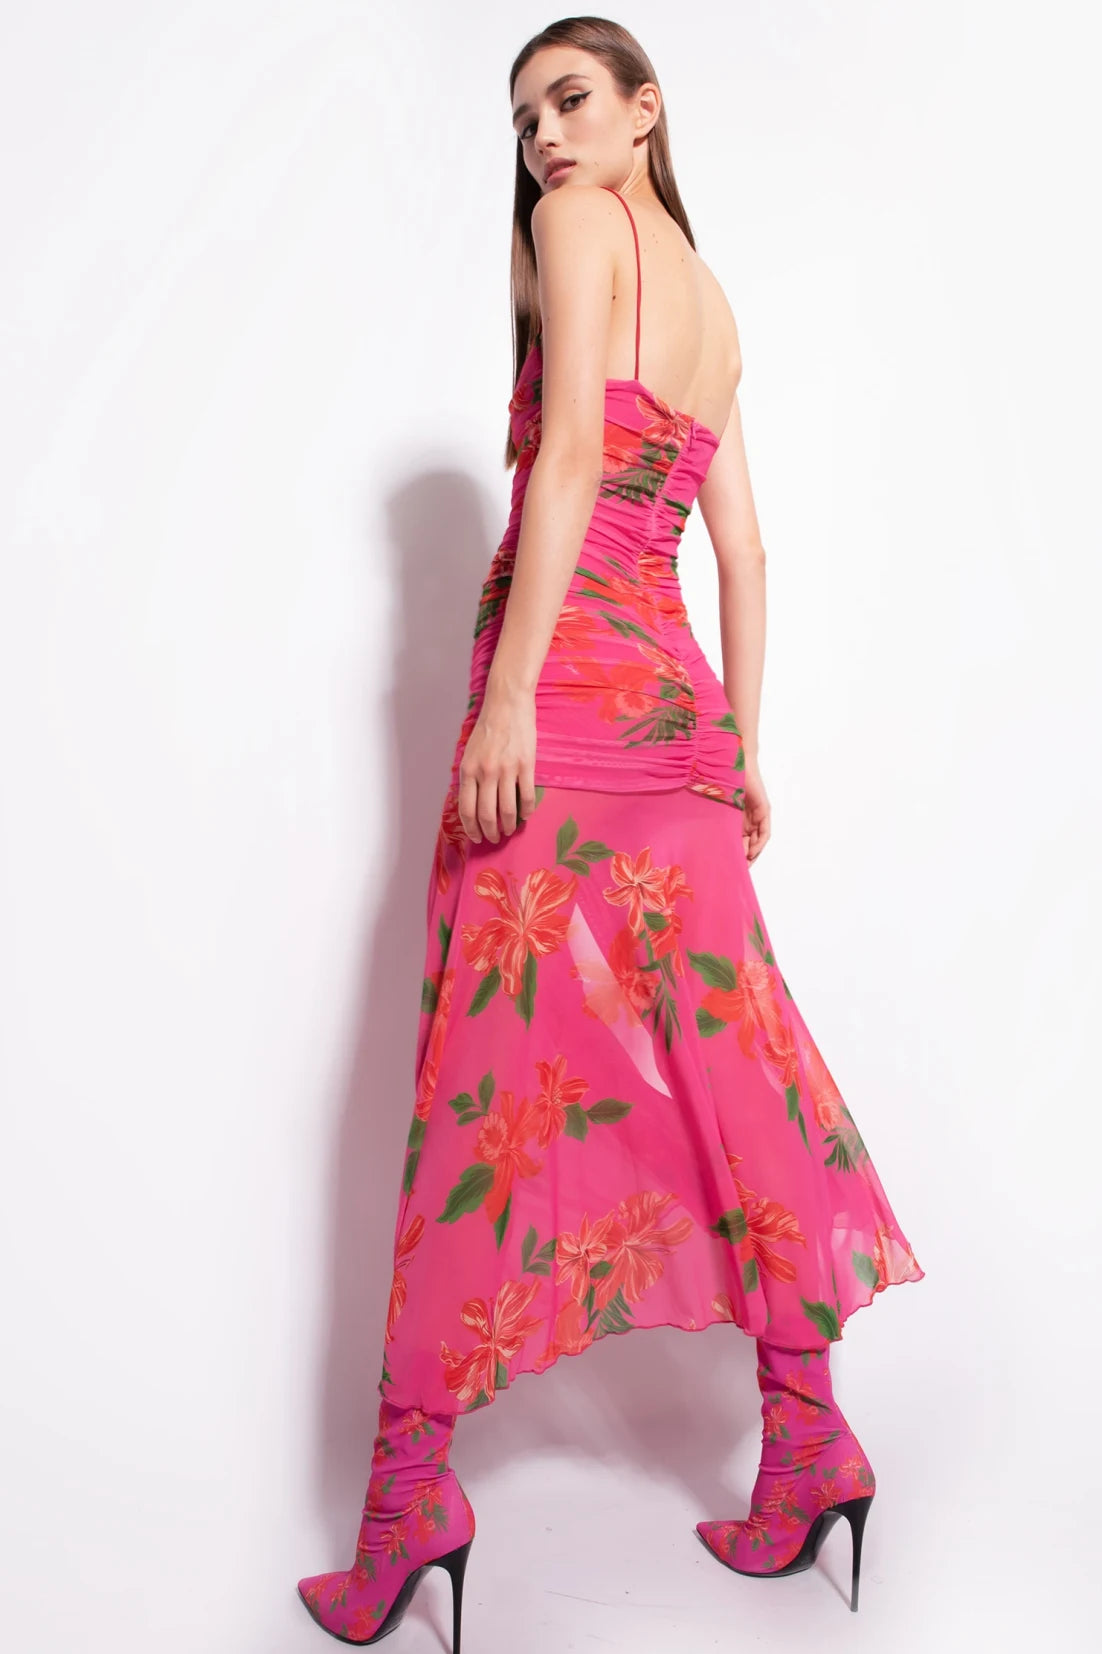 Abrozato slim-fit floral-print dress by Pinko